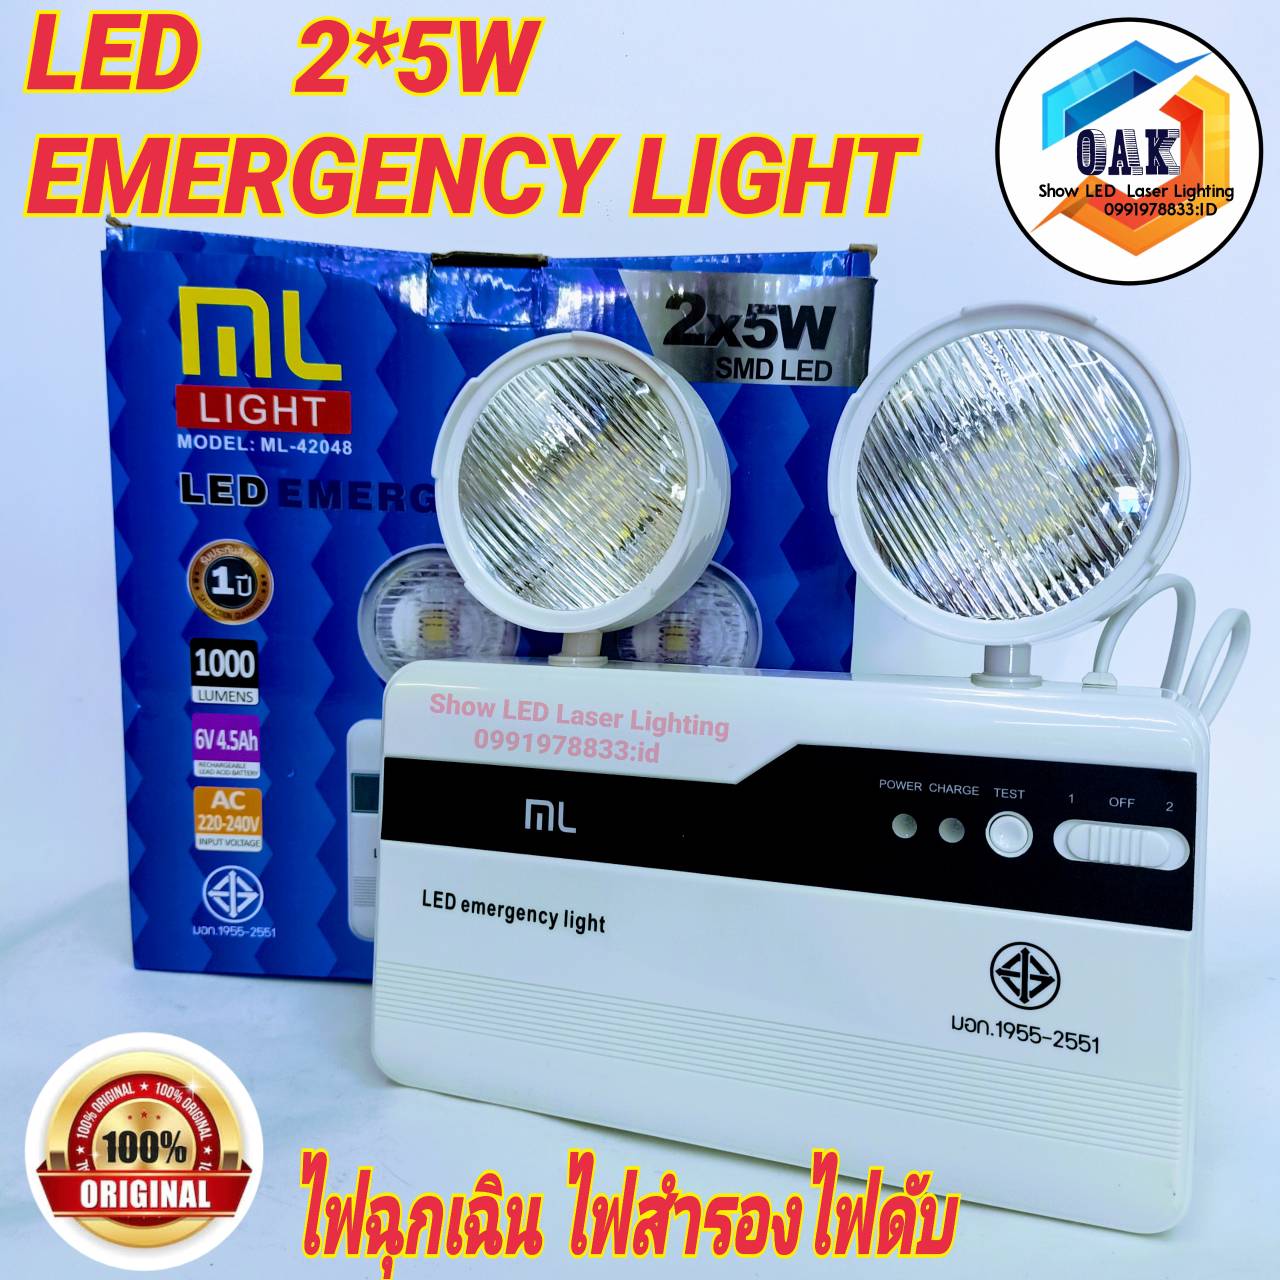 ไฟ LED Automatic Emergency Light 2*5W ไฟสำรอง ไฟดับ ไฟฉุกเฉิน ติดบ้านดี ไฟดับไฟตกติด อื่นๆ ปรับทิศทางได้รอบ 360 องศา สว่างมากขึ้นกว่าเดิม